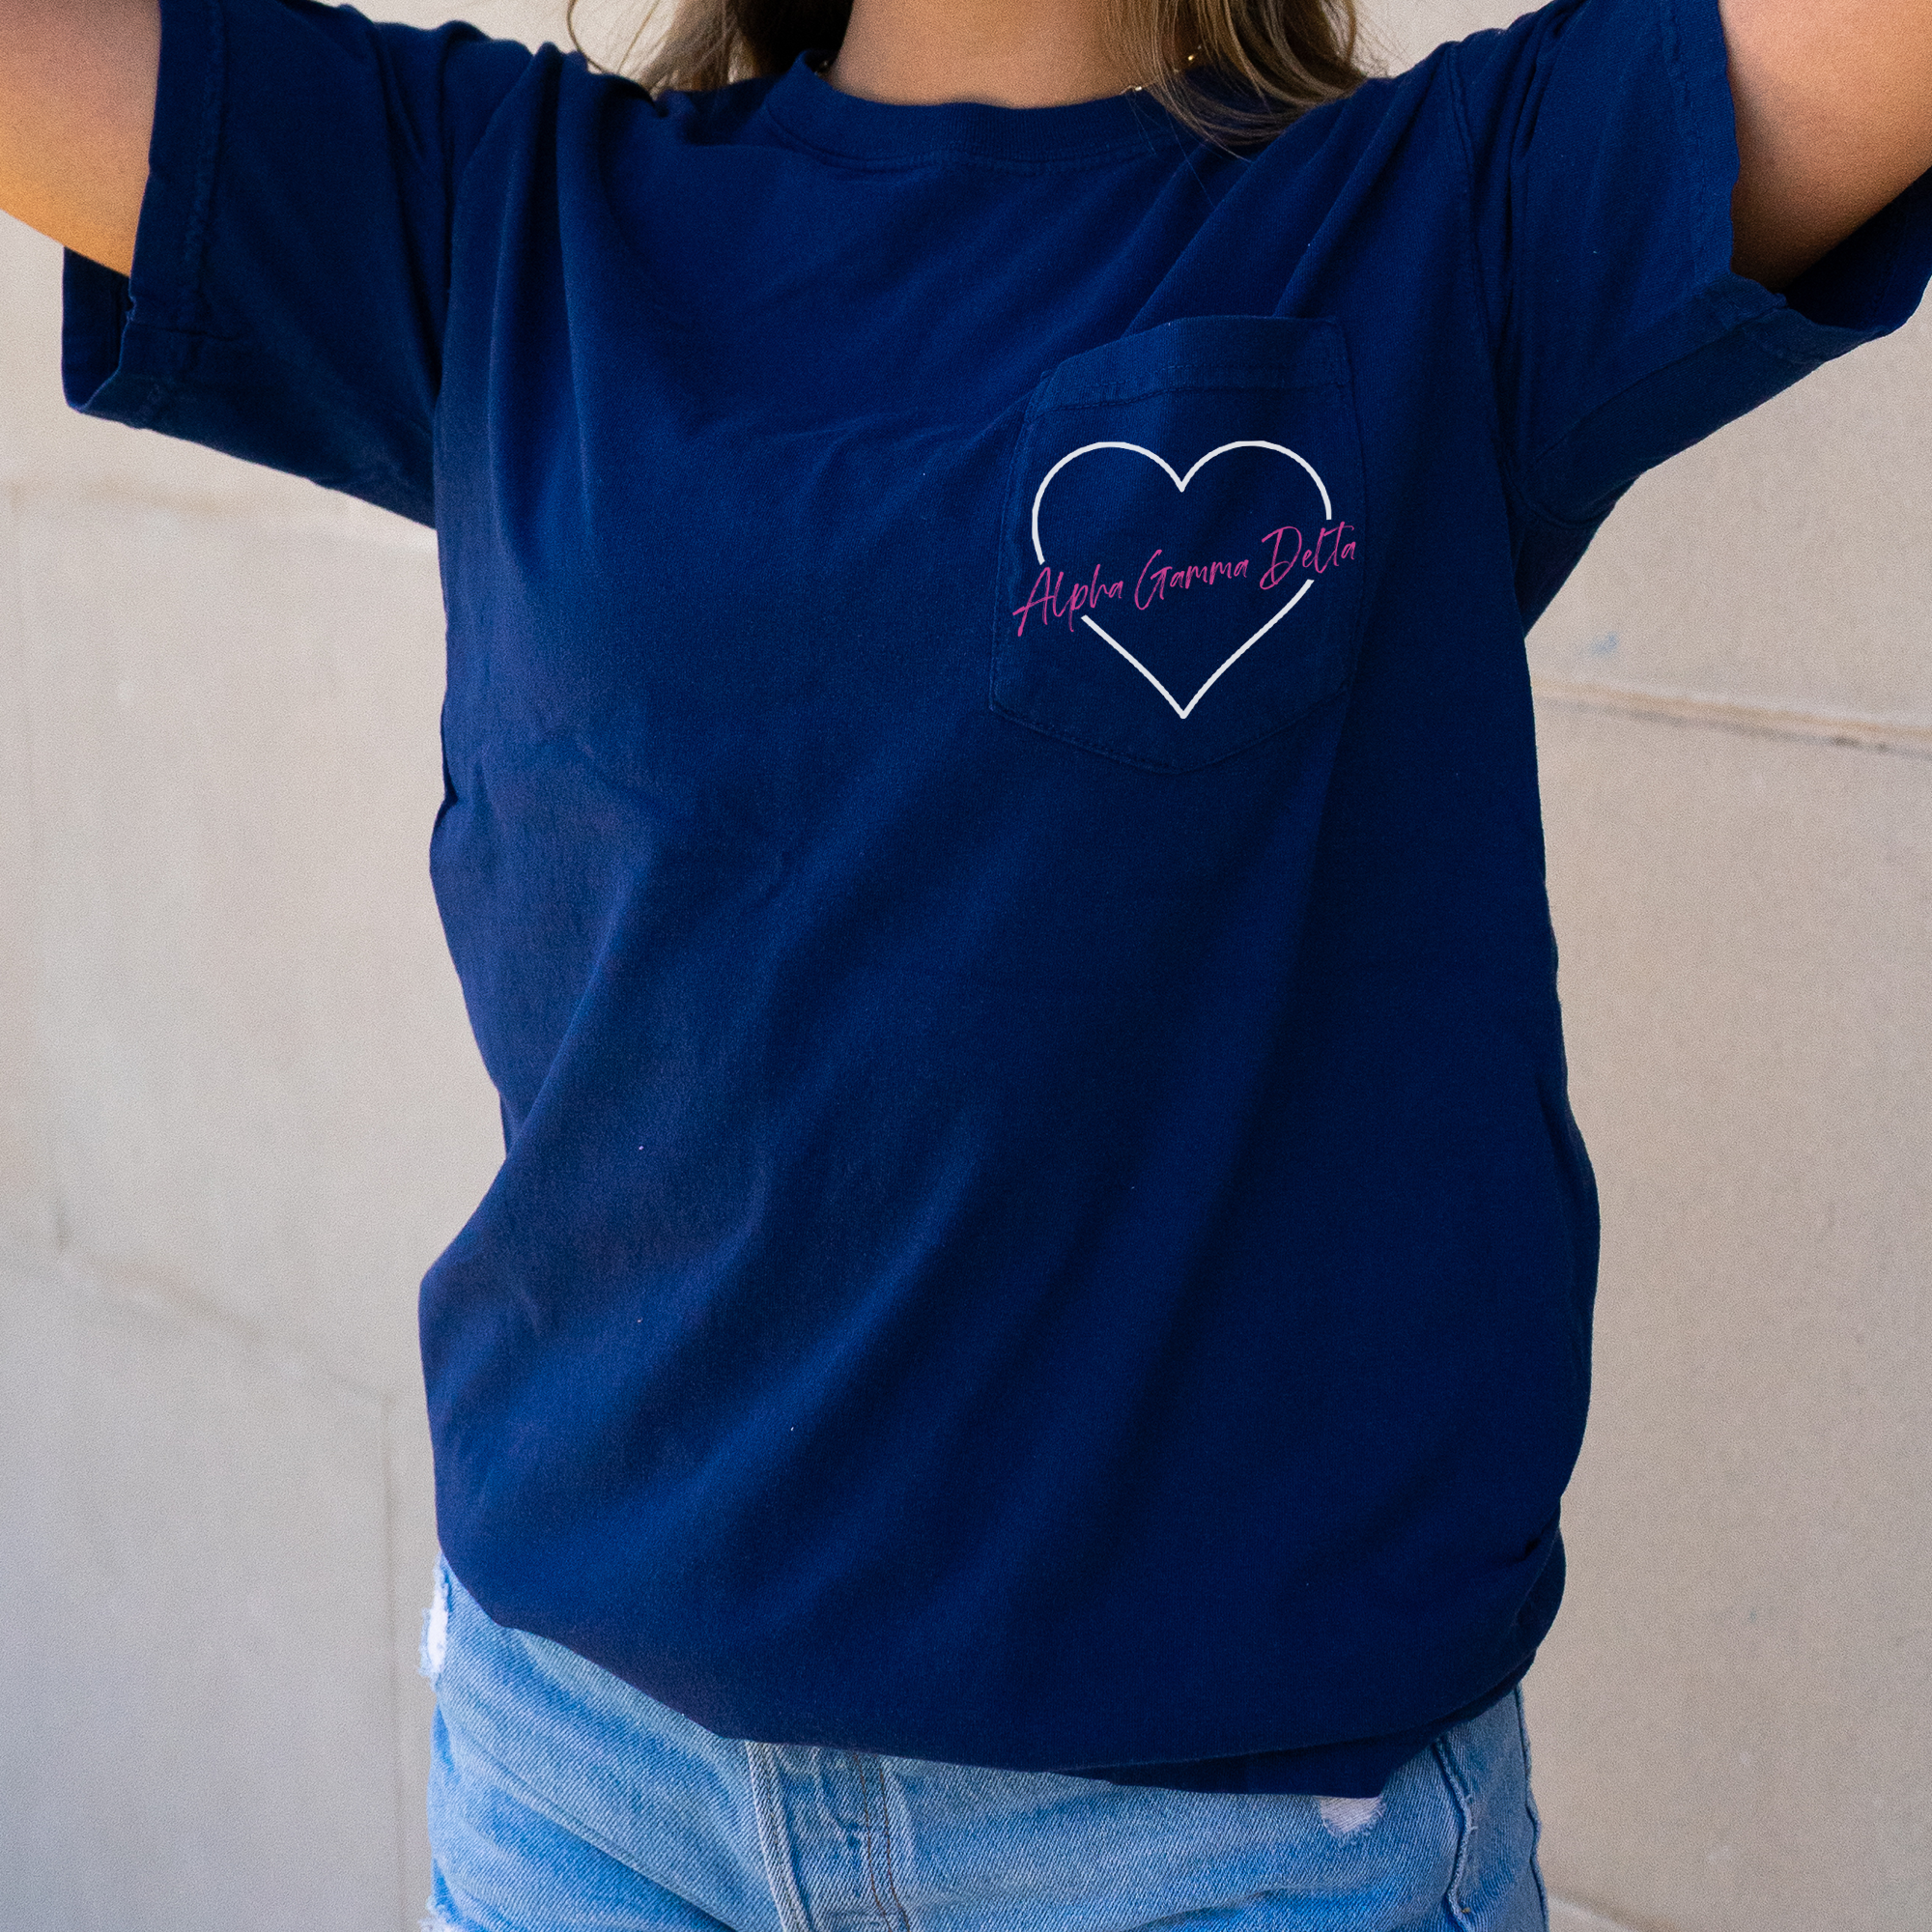 Alpha Gamma Delta Heart Pocket T-Shirt - Navy - Go Greek Chic